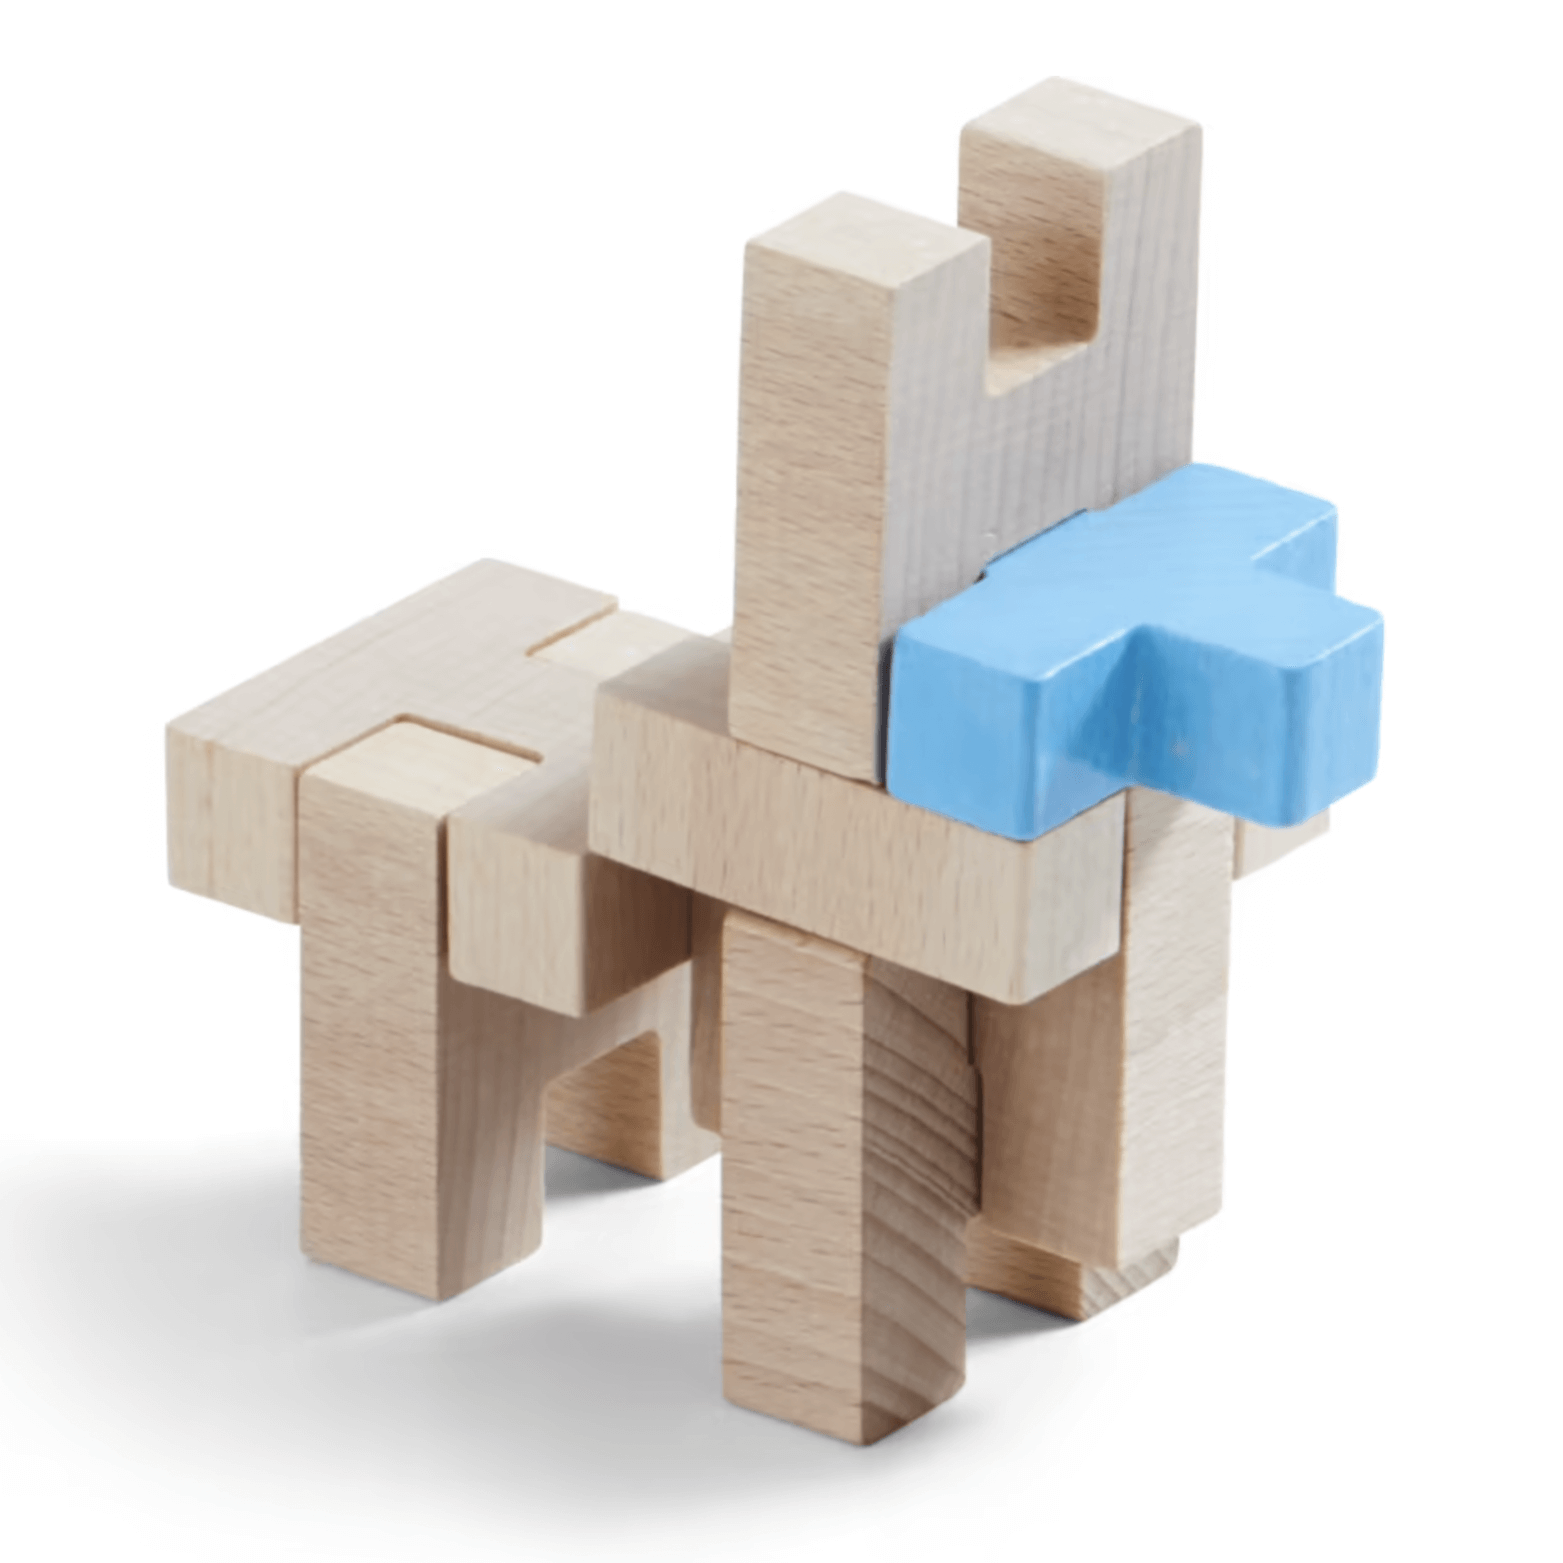 construir formas originales con bloques de madera